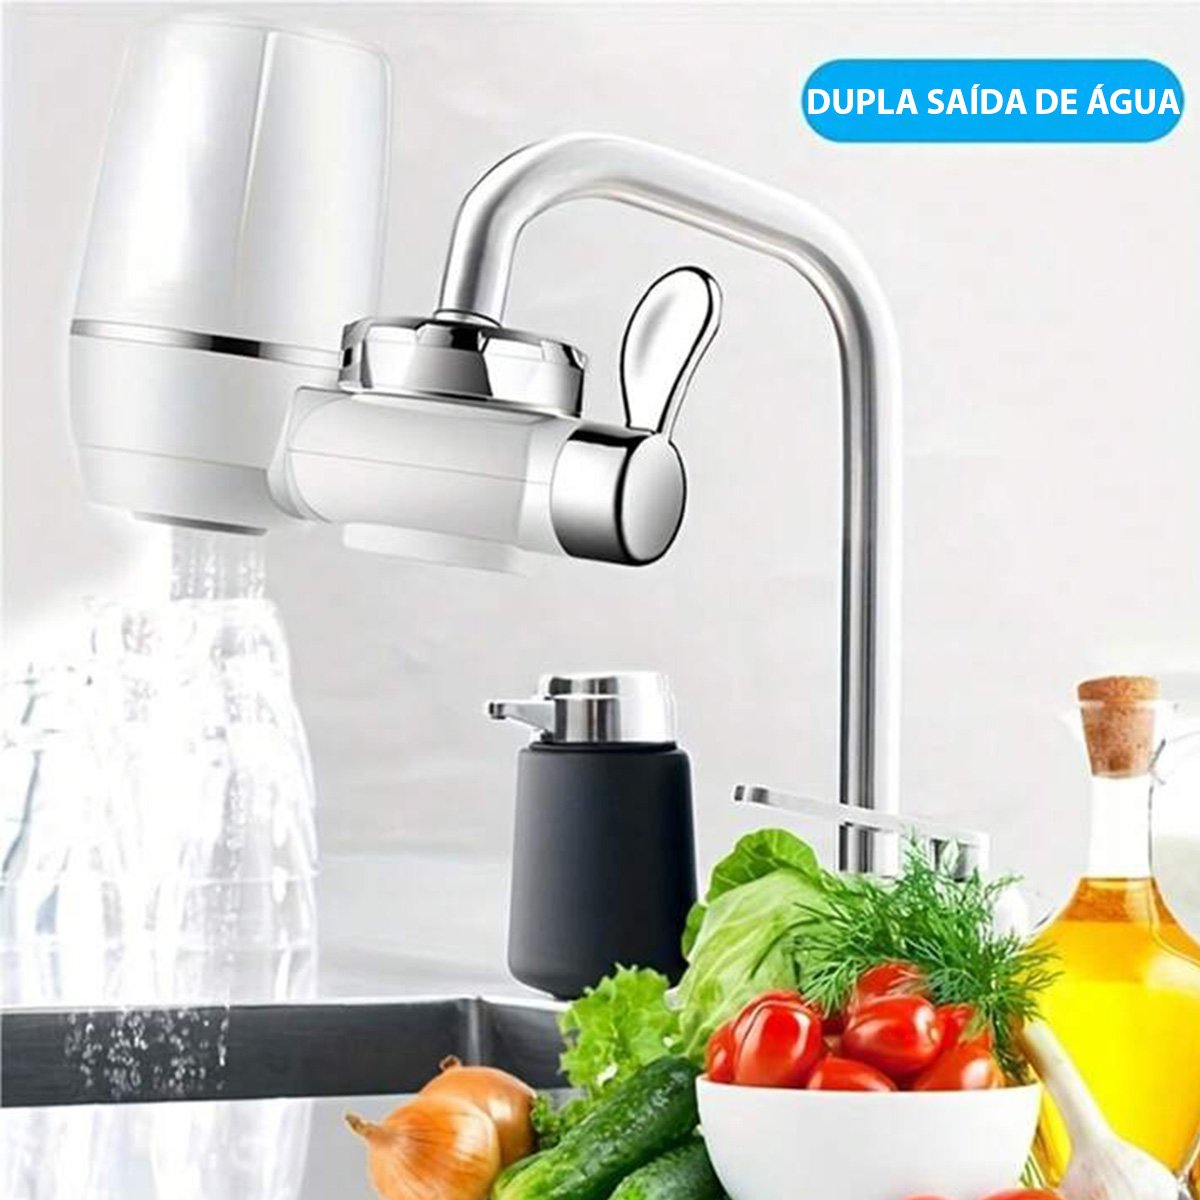 Filtro Purificador Agua Limpa Potavel Filtrada Pia Torneira Cozinha Banheiro Casa Ab.midia Jba-filt - 8